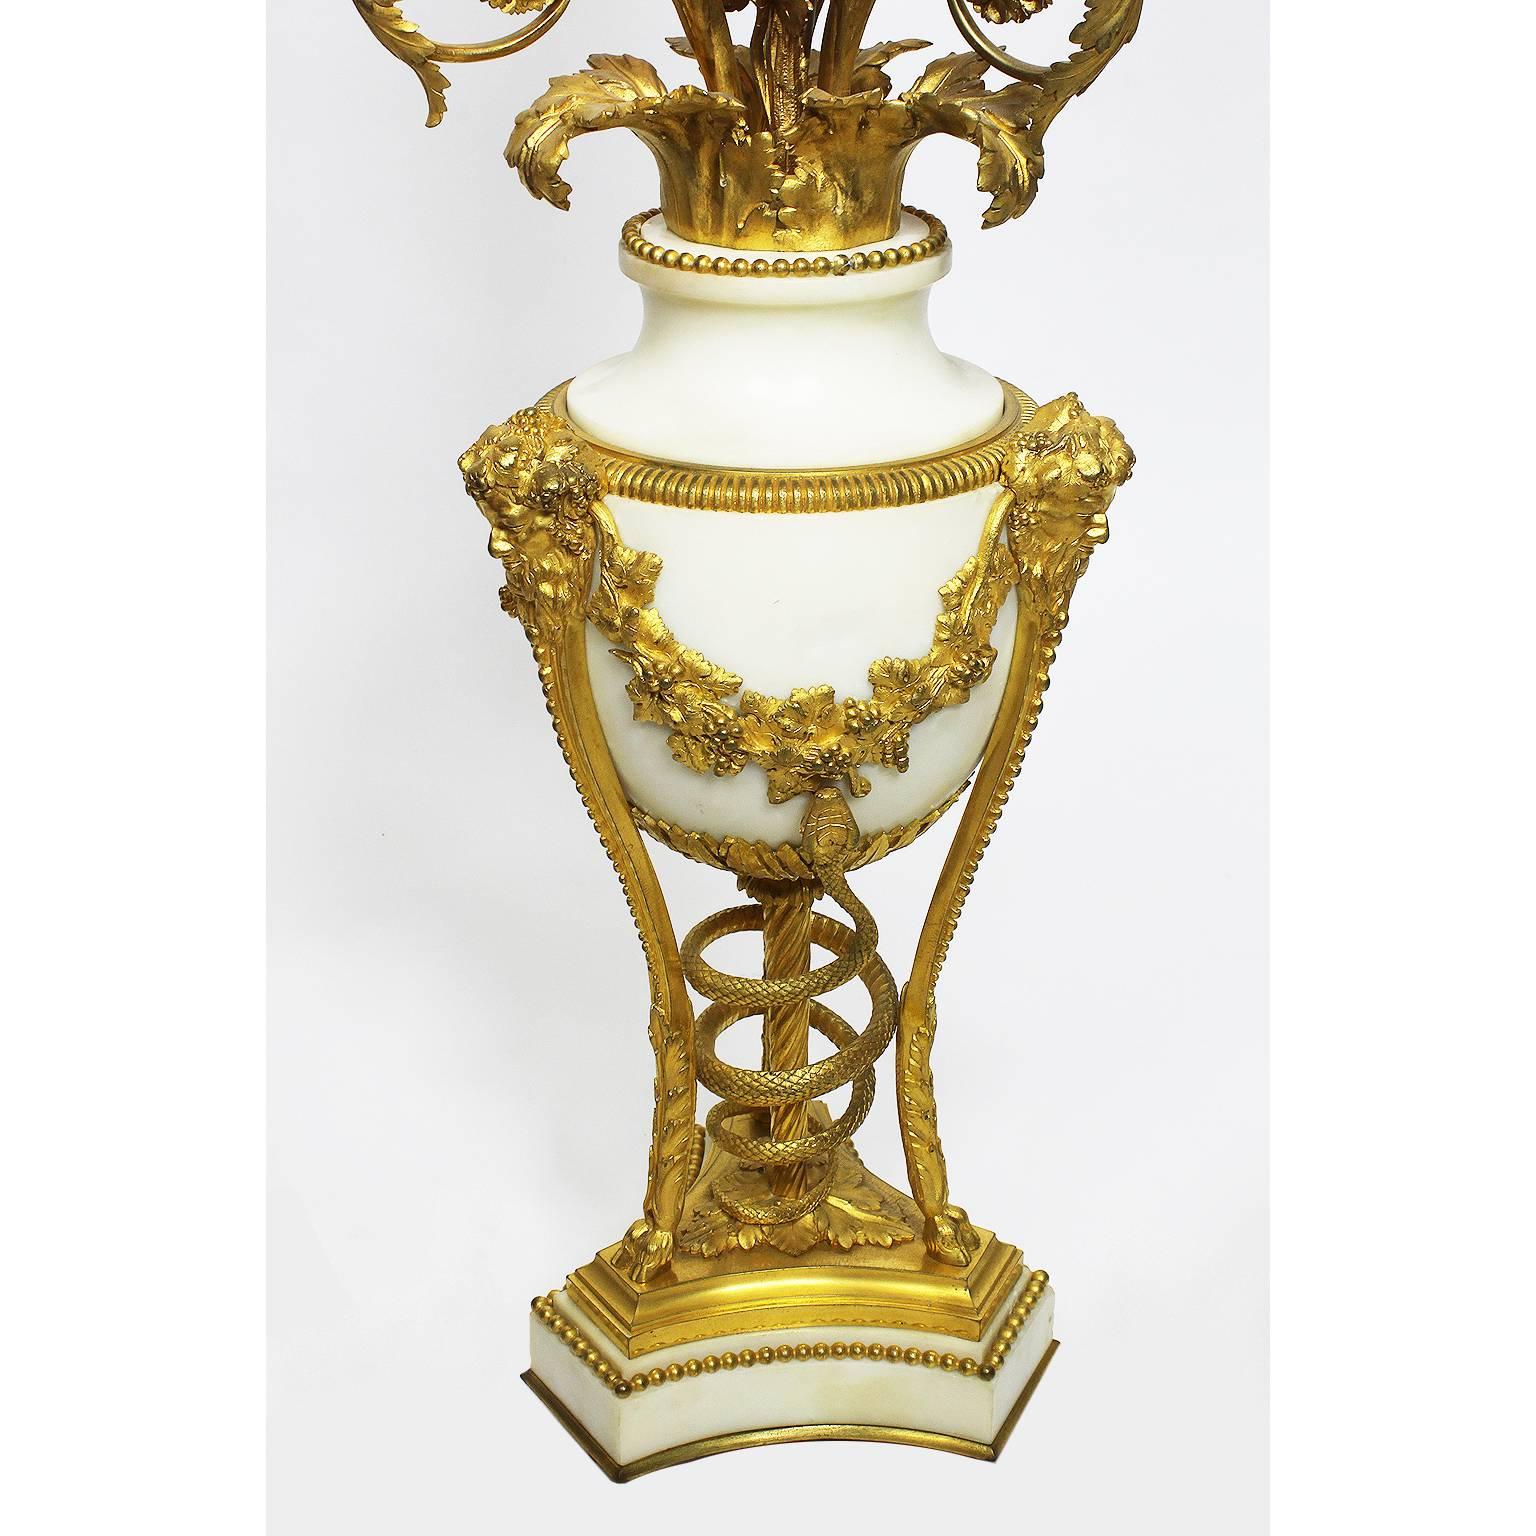 Alfred Emmanuel Louis Beurdeley (Français, 1847-1919) Très belle paire de candélabres à trois lumières (aujourd'hui électrifiés) de style Louis XVI du XIXe siècle, montés sur du bronze doré et du marbre blanc, chacun reposant sur des pieds en forme